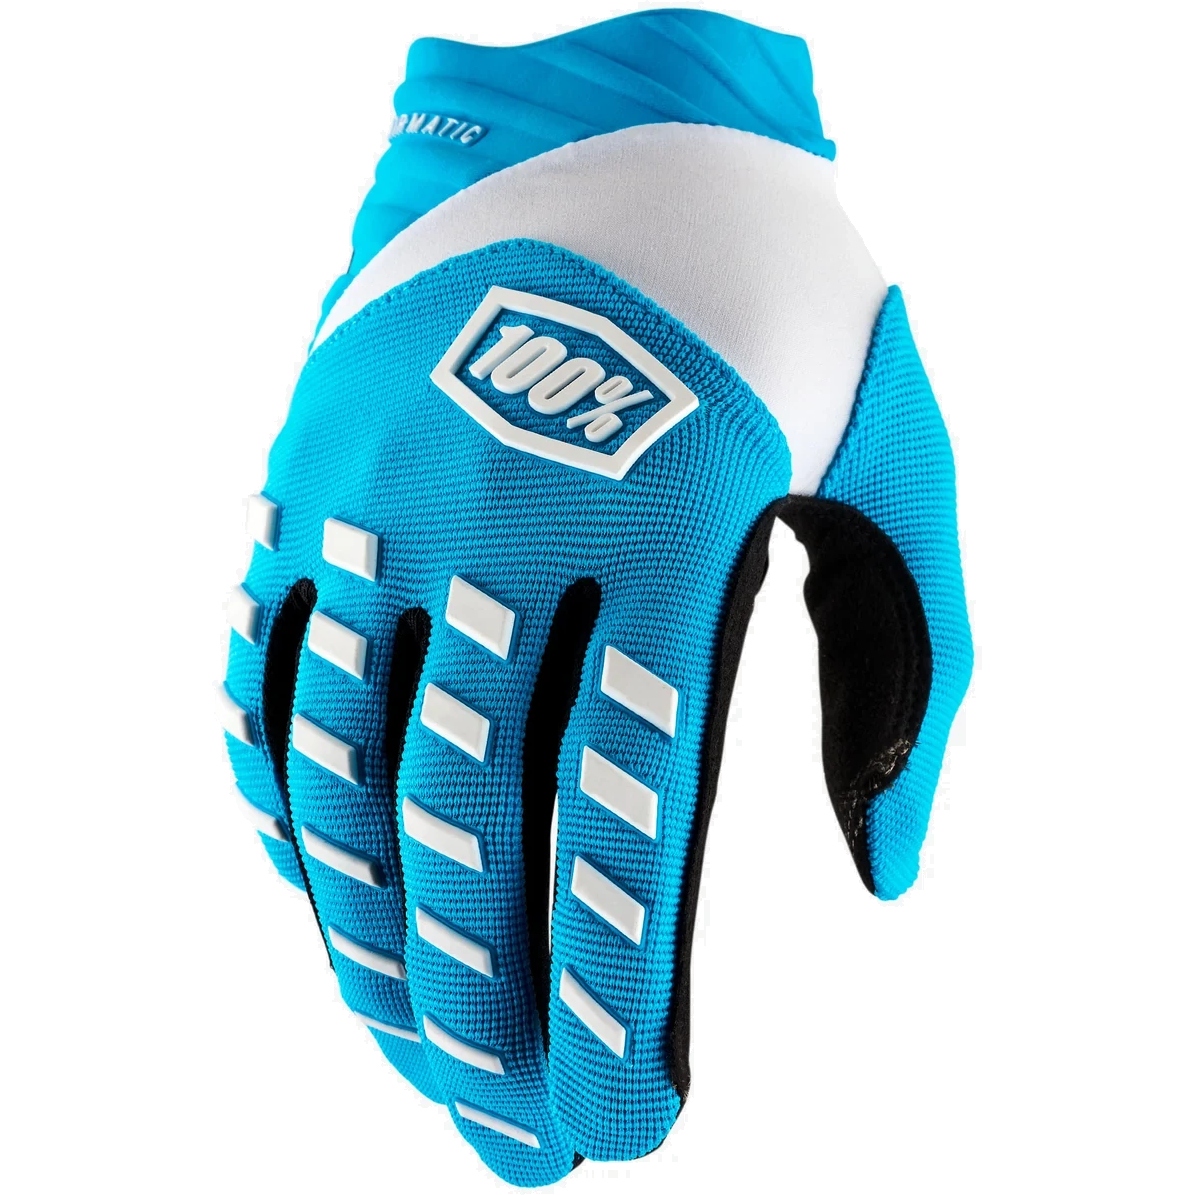 Productfoto van 100% Airmatic Bike Gloves - blue